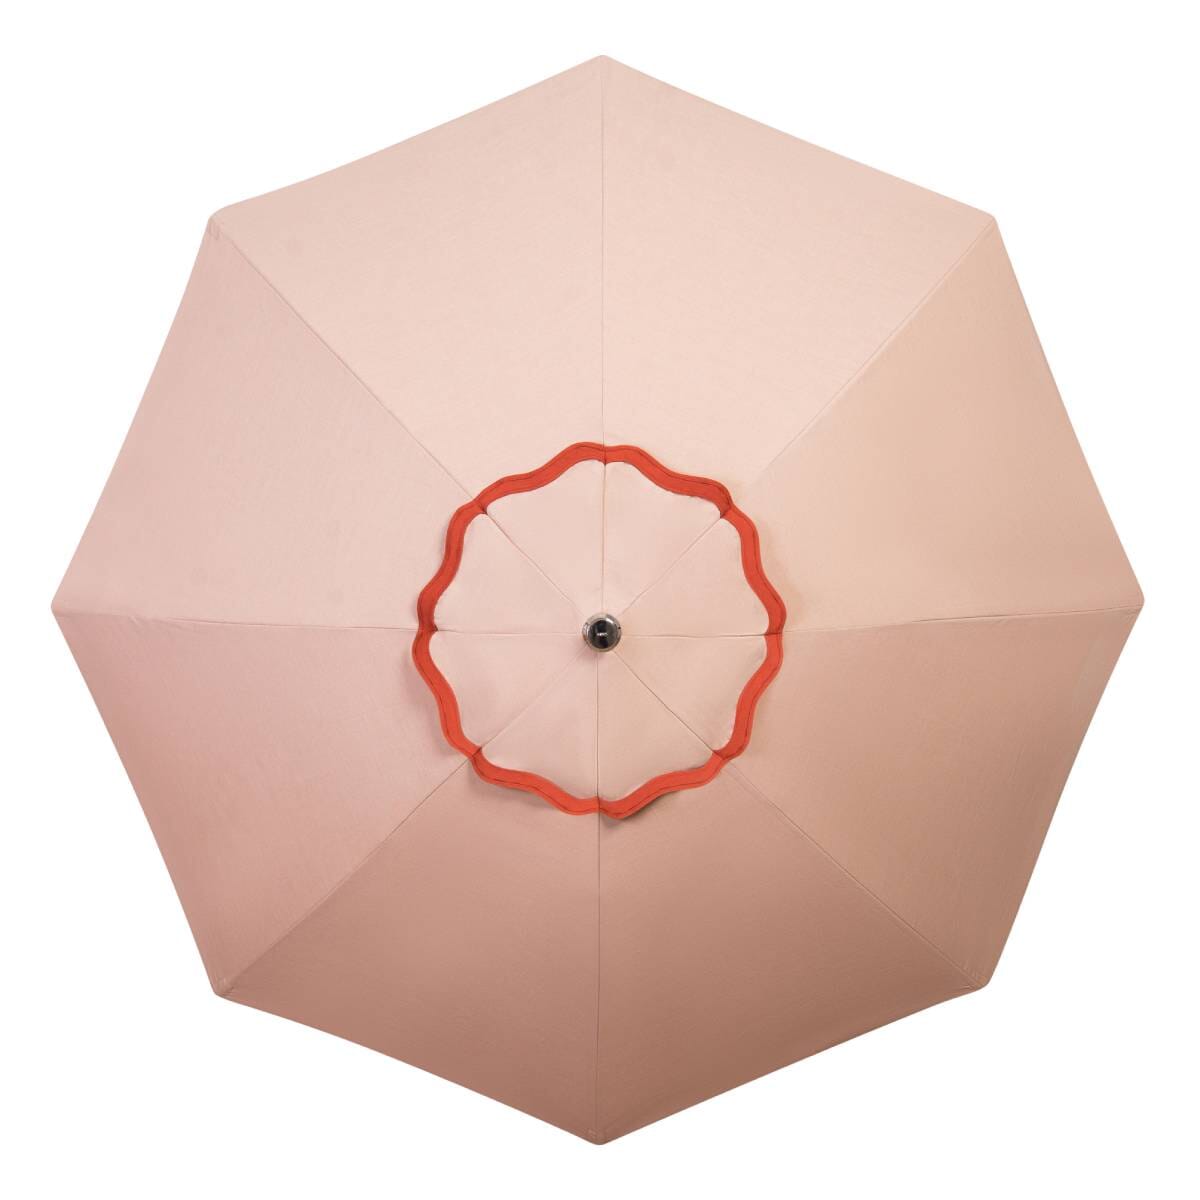 Studio image of rivie pink patio umbrella